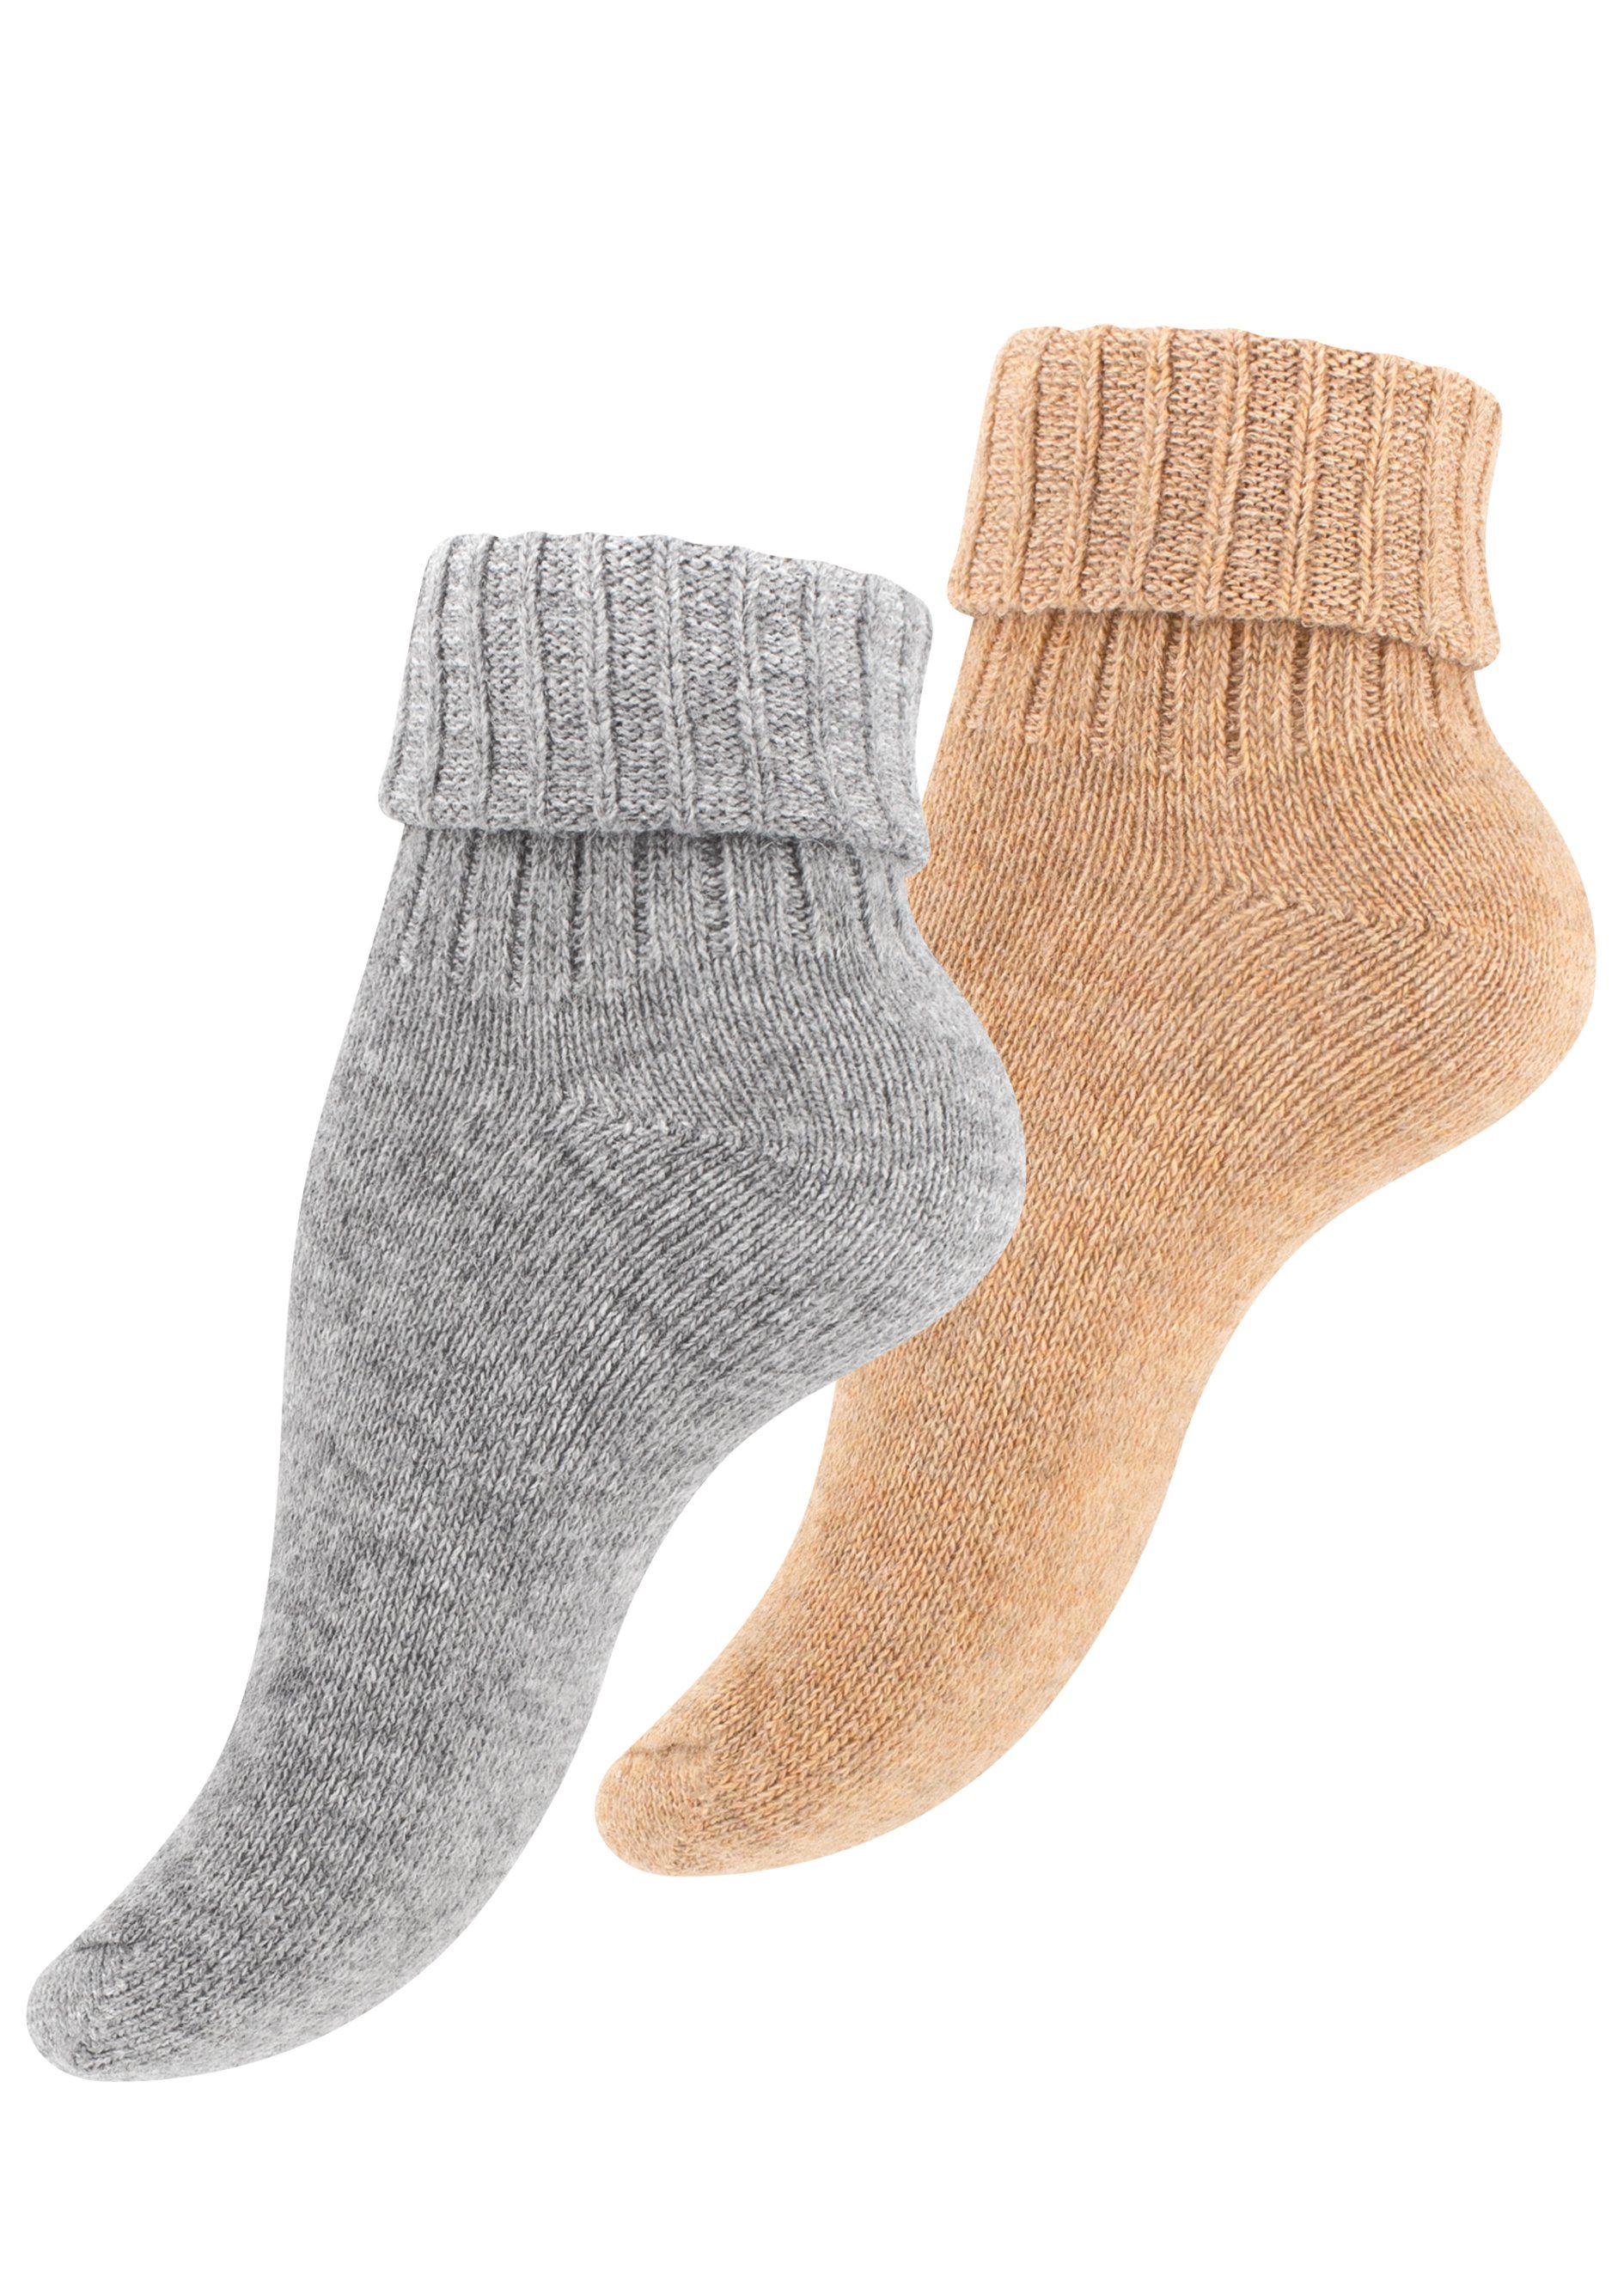 Cotton Prime® Socken Alpaka Socken mit Umschlag (2-Paar) ökologisch gefärbt und vorgewaschen hellgrau/beige